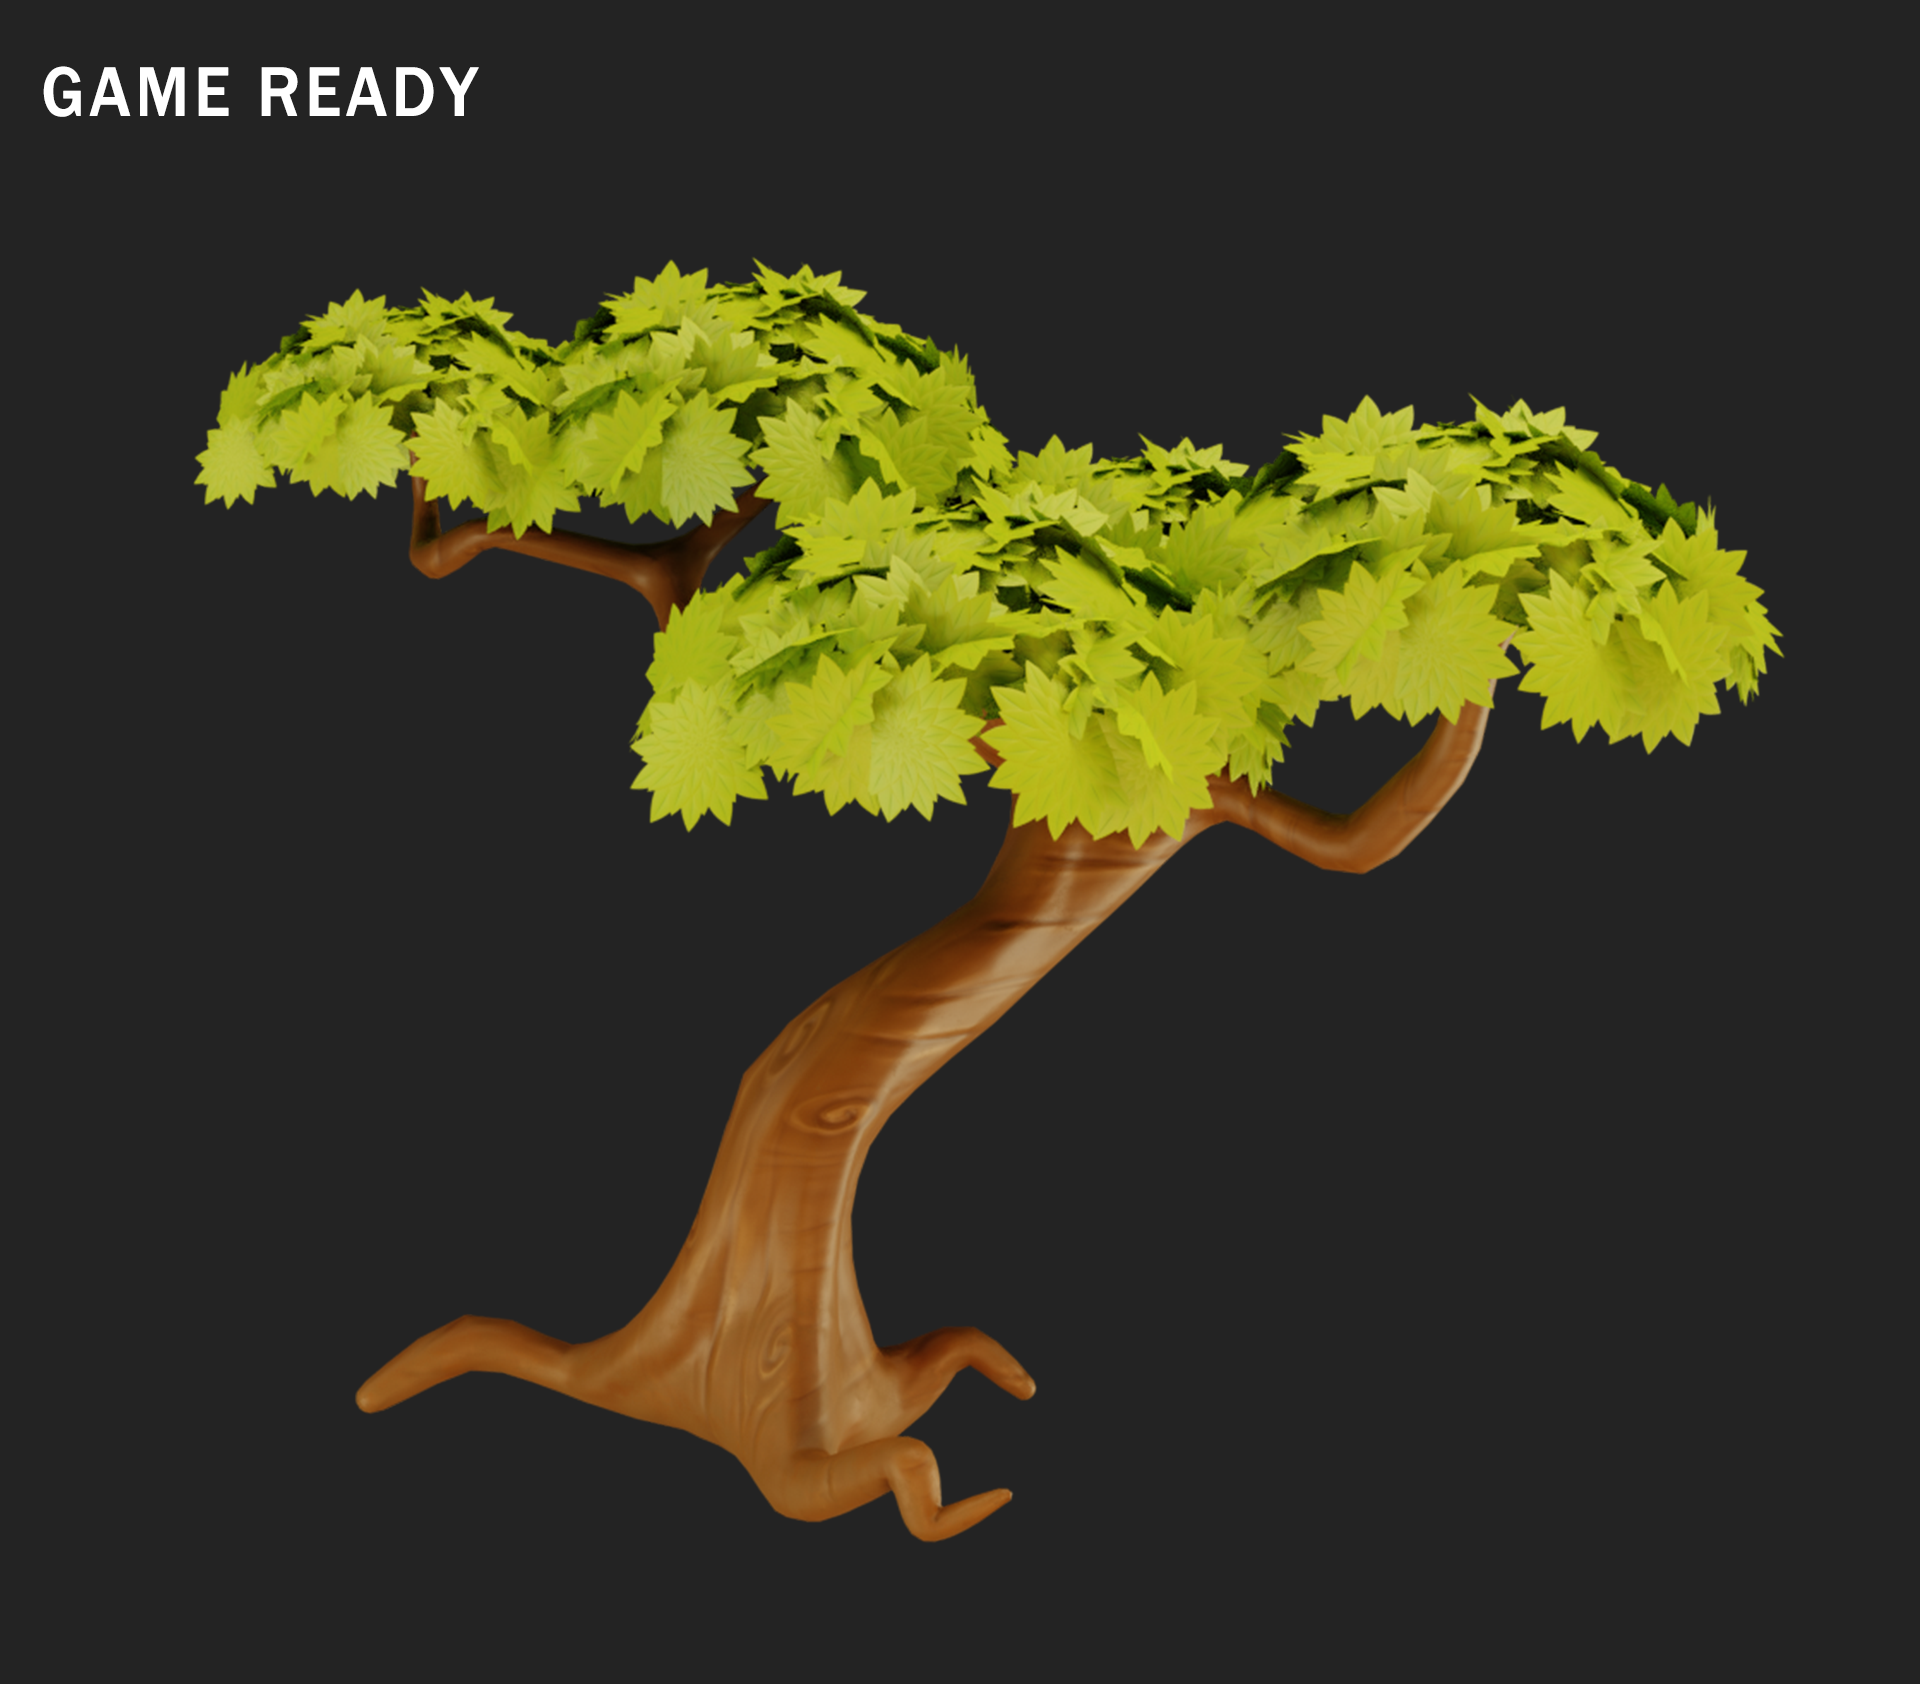 blender 3d tree model download